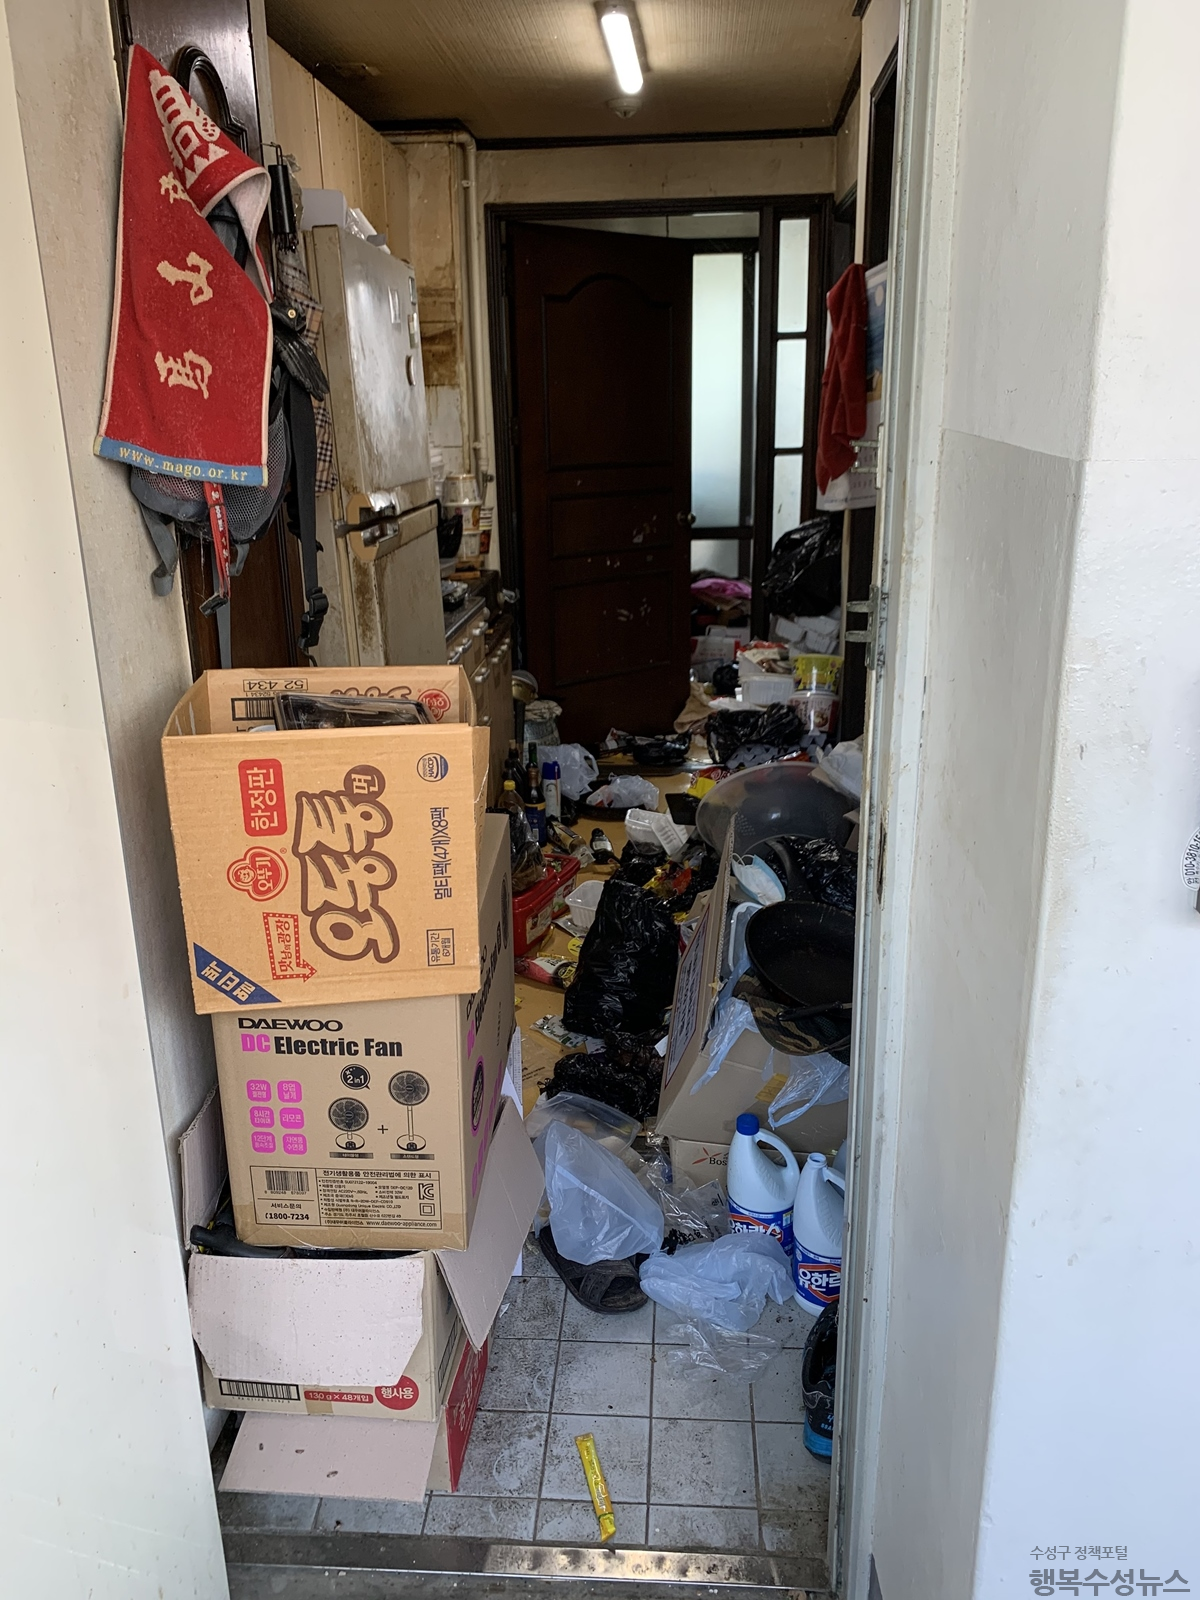 저장강박으로 쓰레기를 방치한 집 안의 청소 전후 사진1